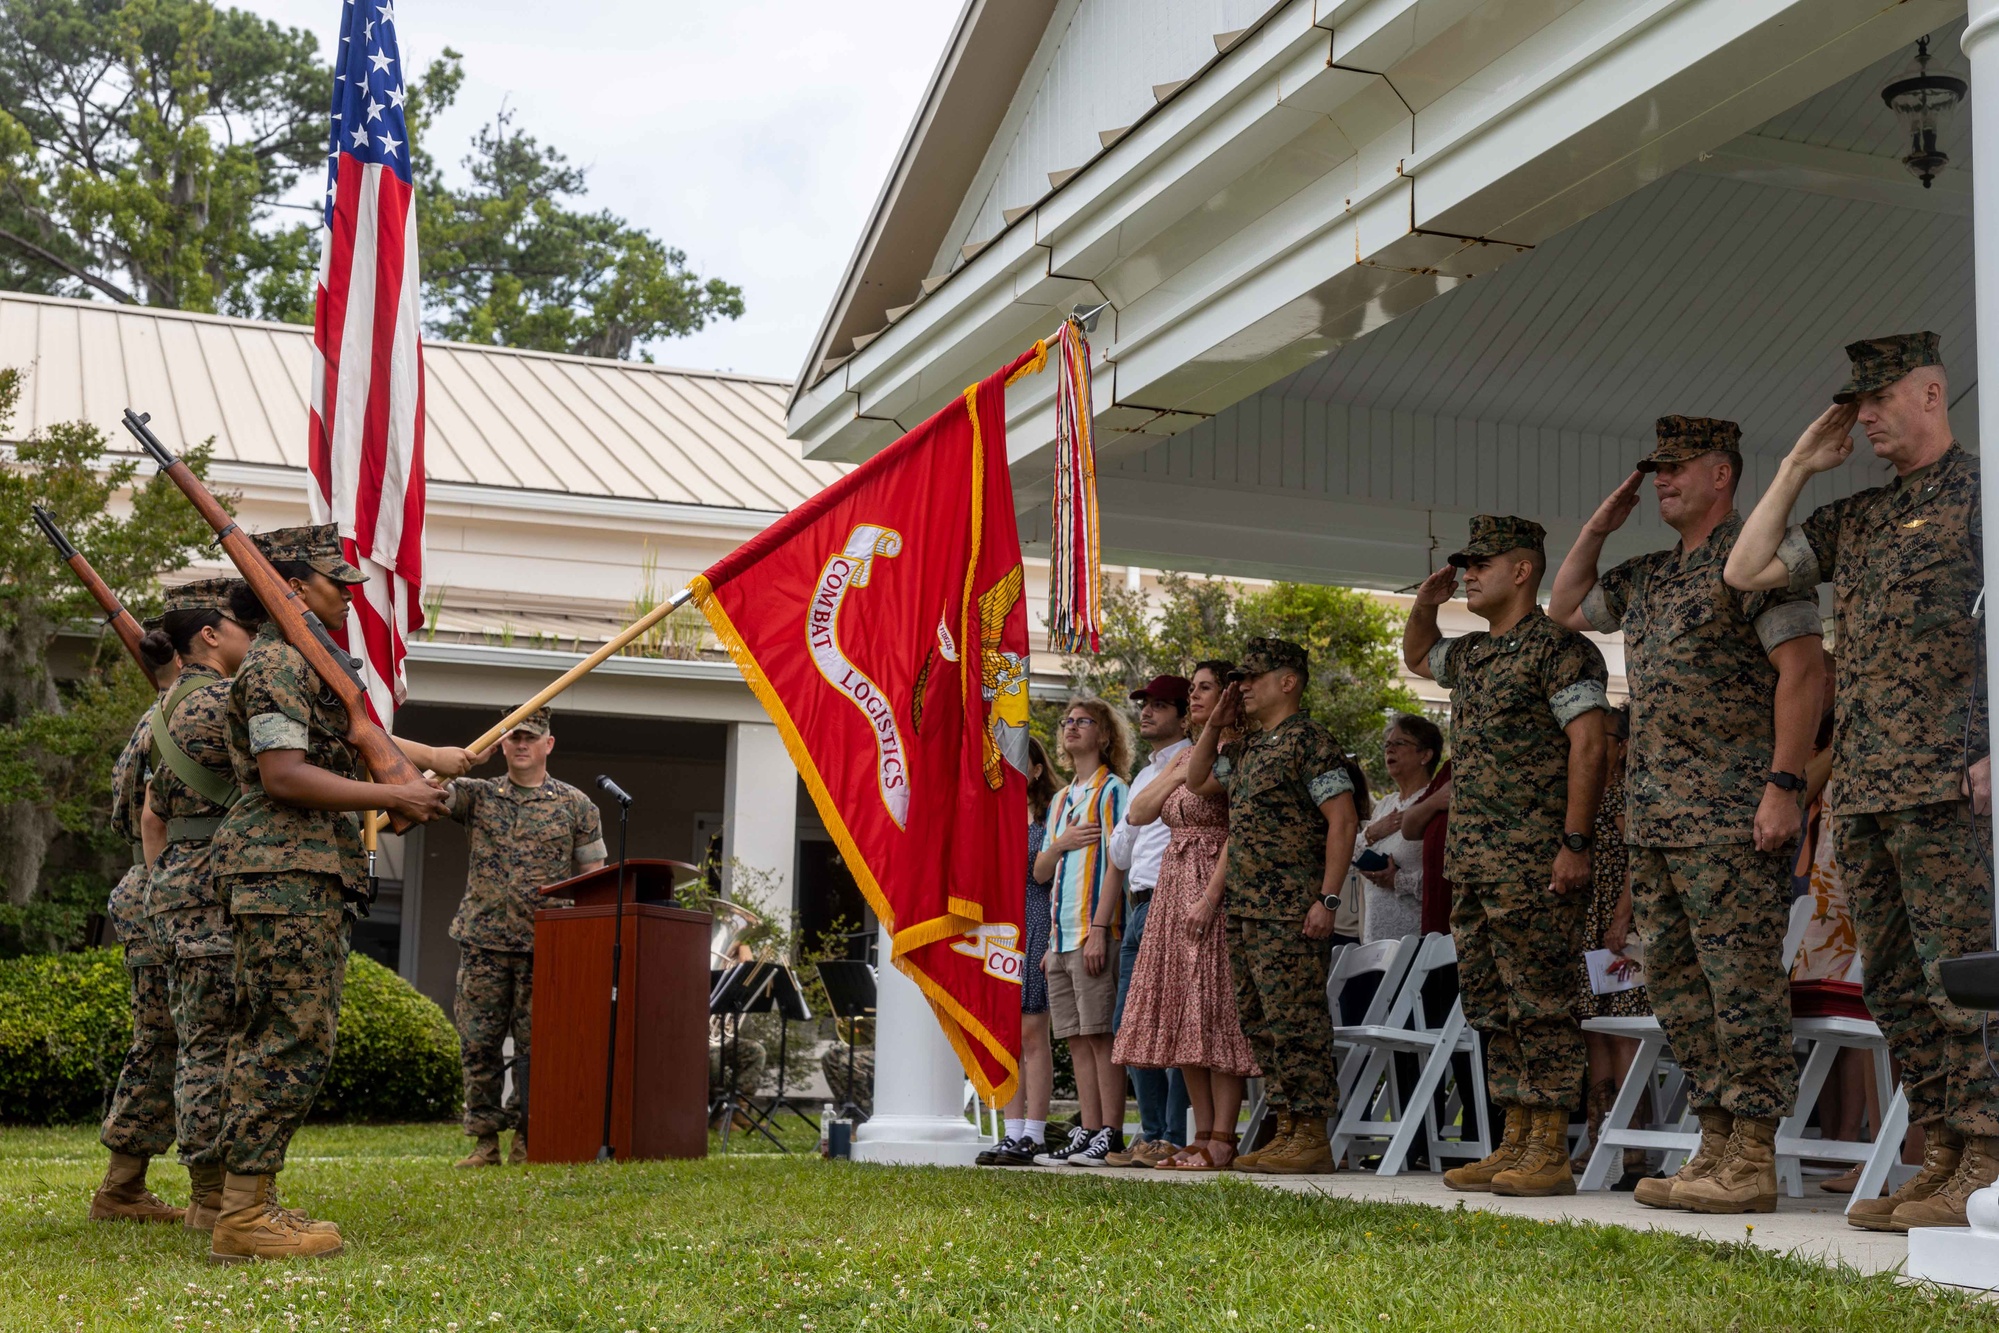 DVIDS - Images - Lt. Col. Manning Retirement Ceremony [Image 5 of 7]